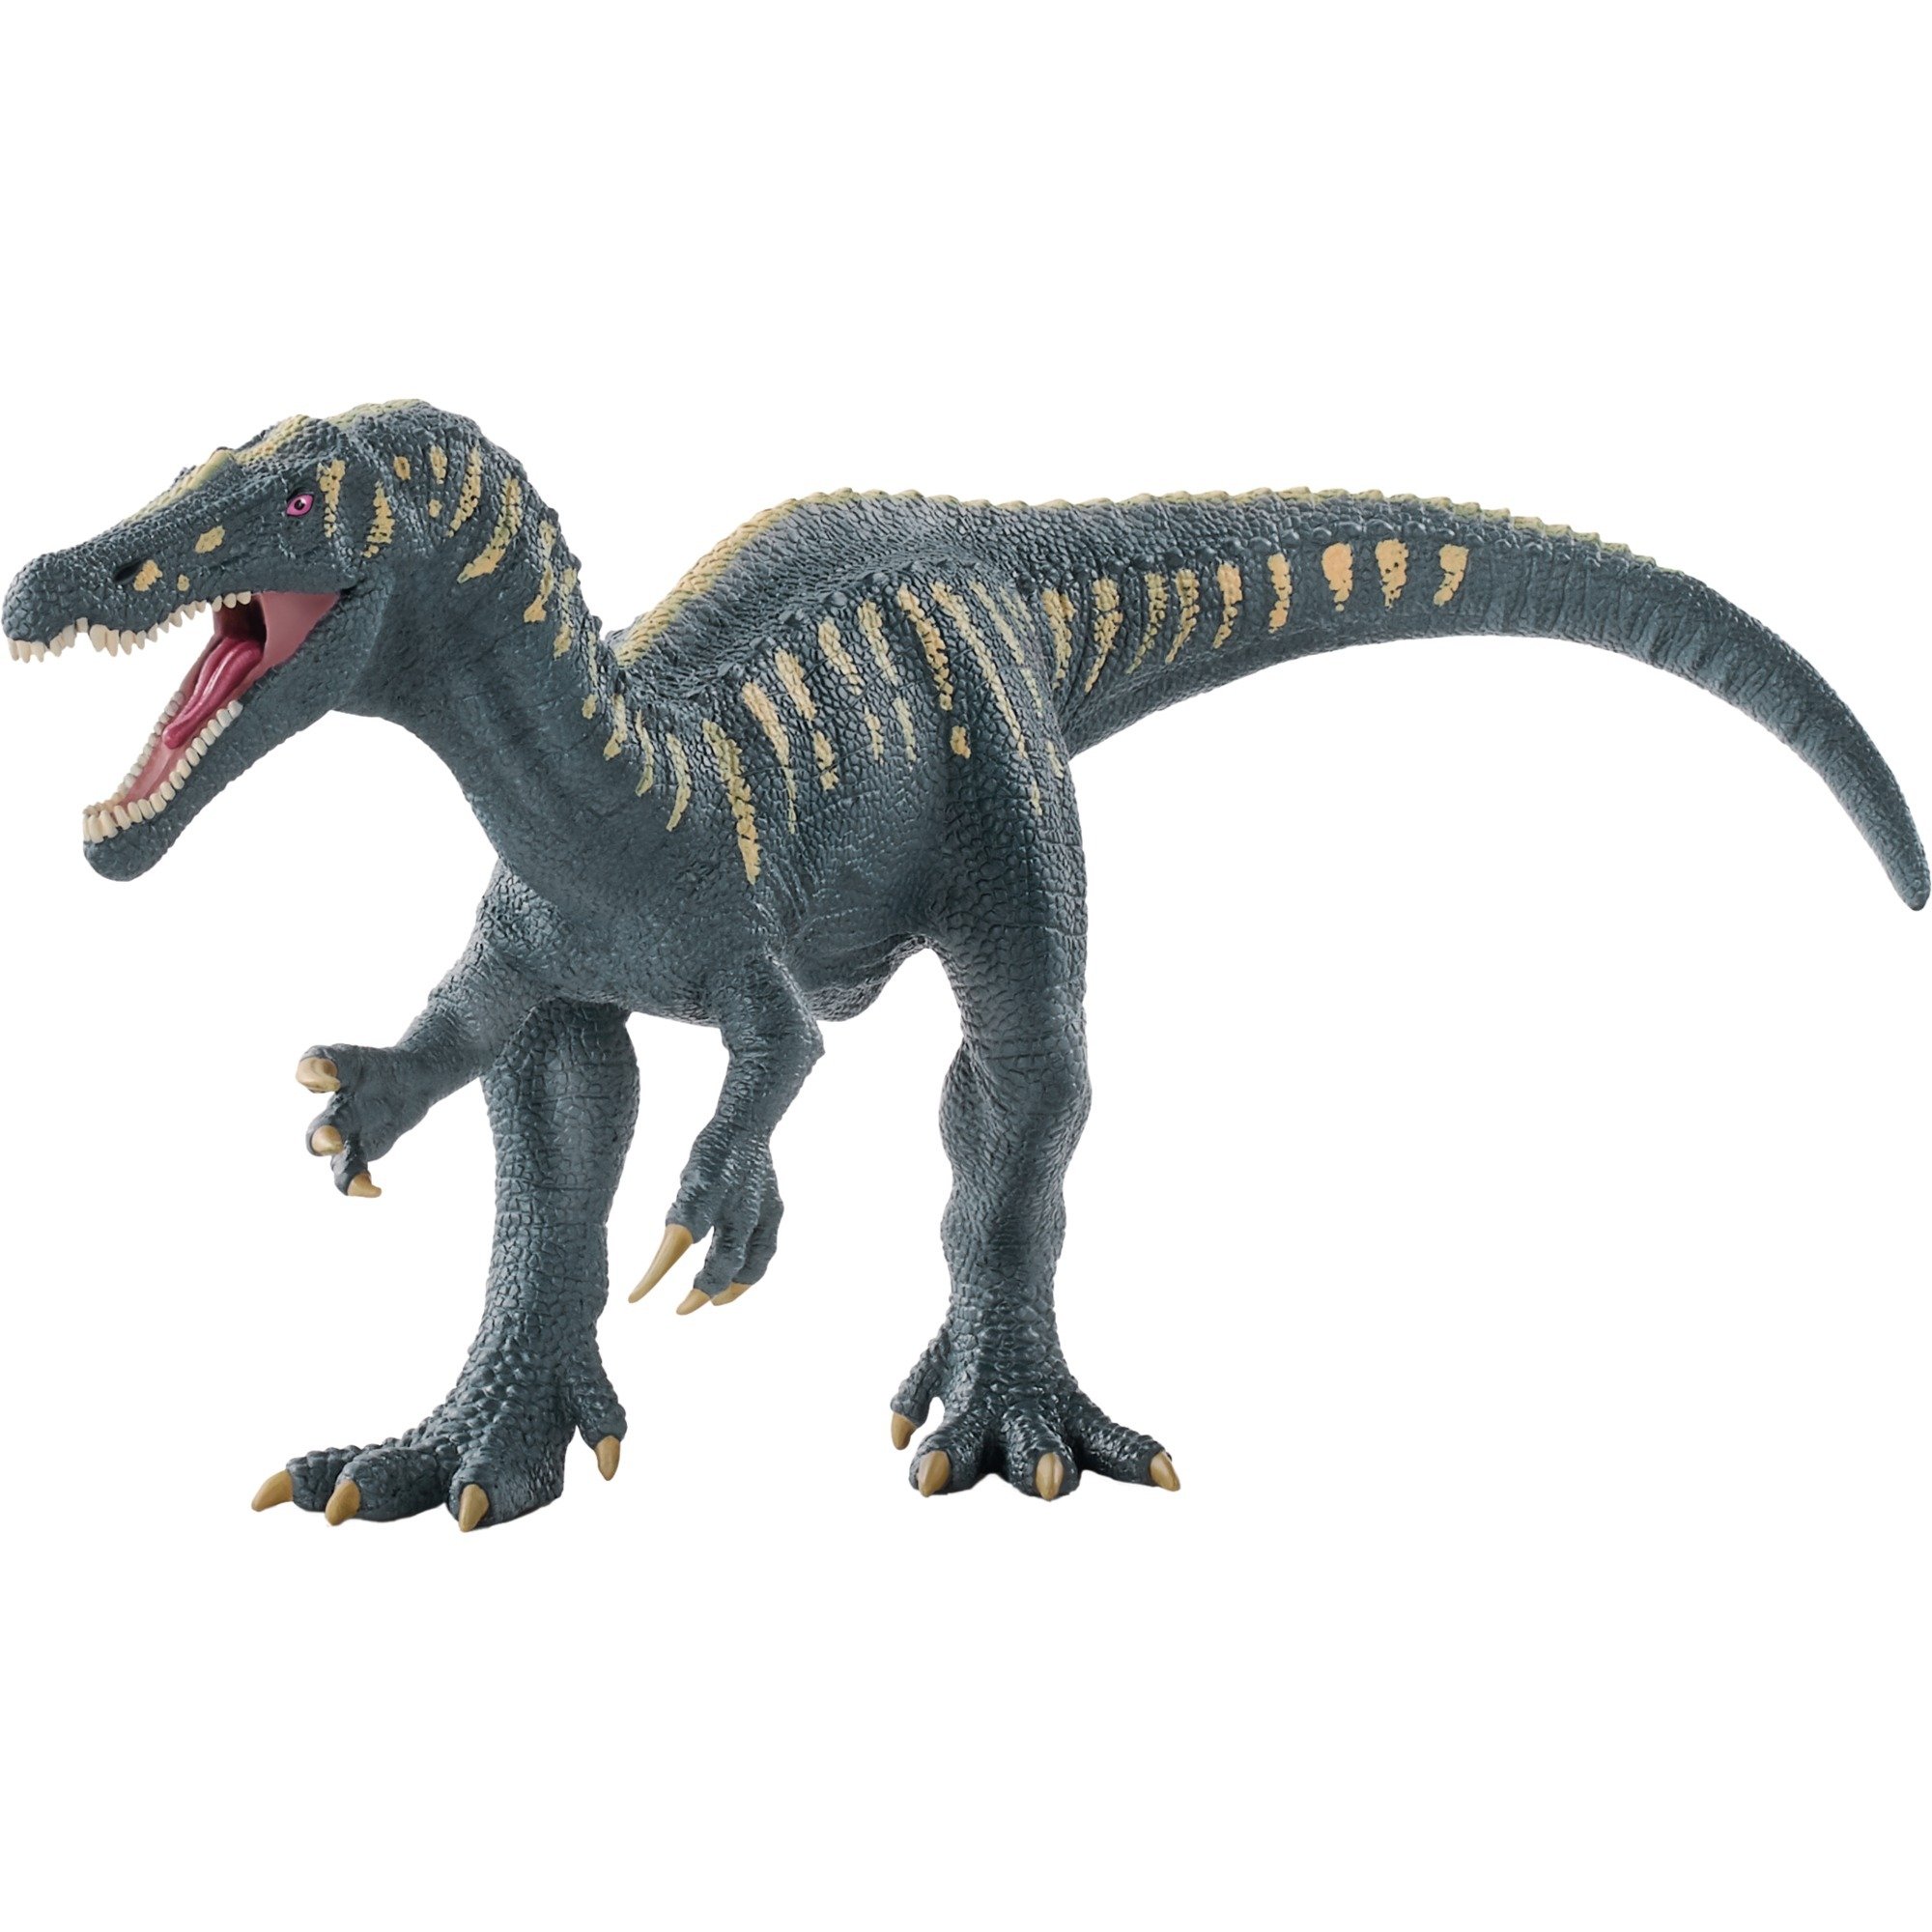 Image of Alternate - Dinosaurs Baryonyx, Spielfigur online einkaufen bei Alternate